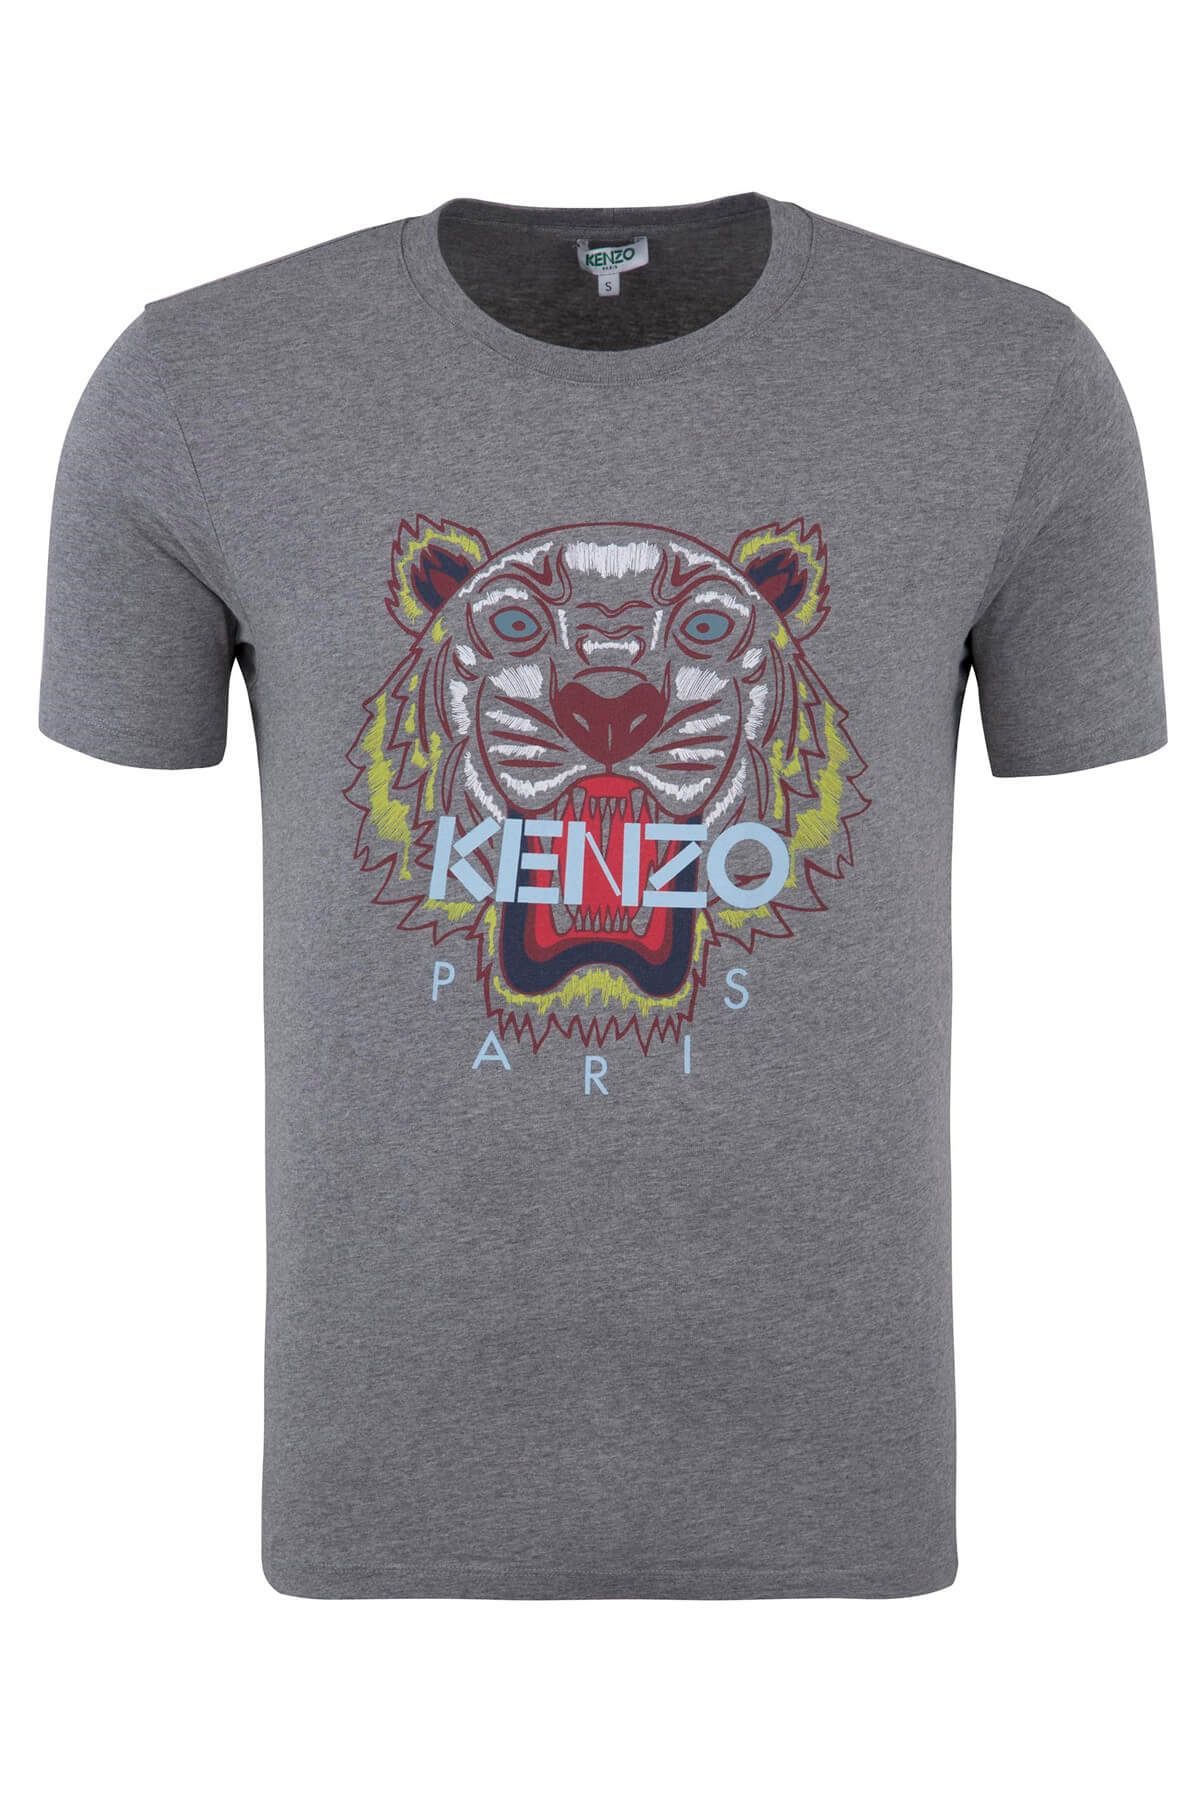 Kenzo Erkek Gri T-Shirt F86 5Ts050 4Ya 95